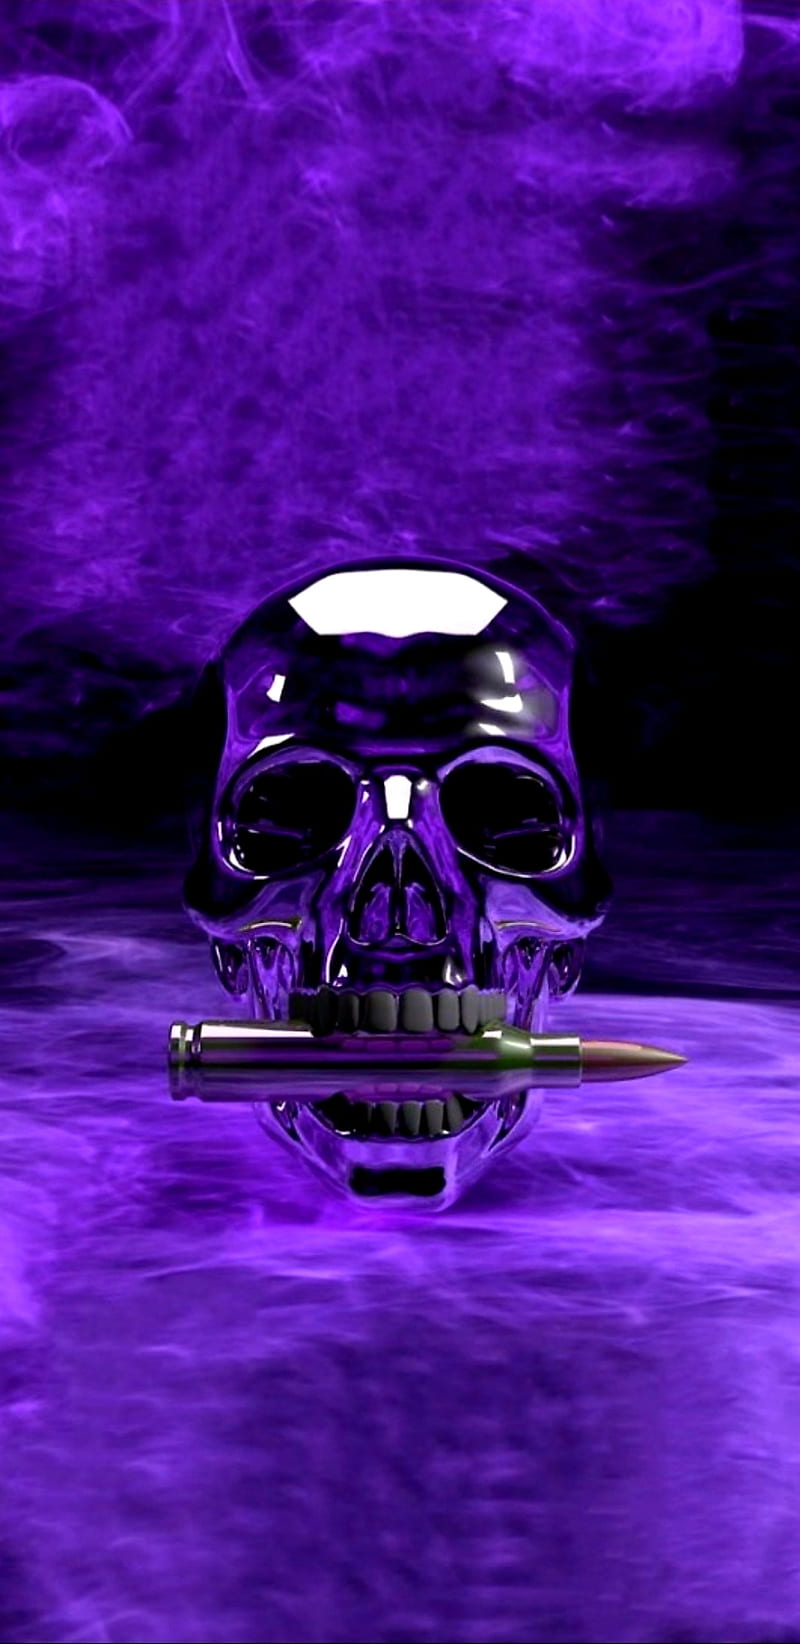 HALLOWEEN PURPLE SKULLS IPHONE WALLPAPER BACKGROUND  Skull wallpaper Purple  wallpaper Dark purple aesthetic